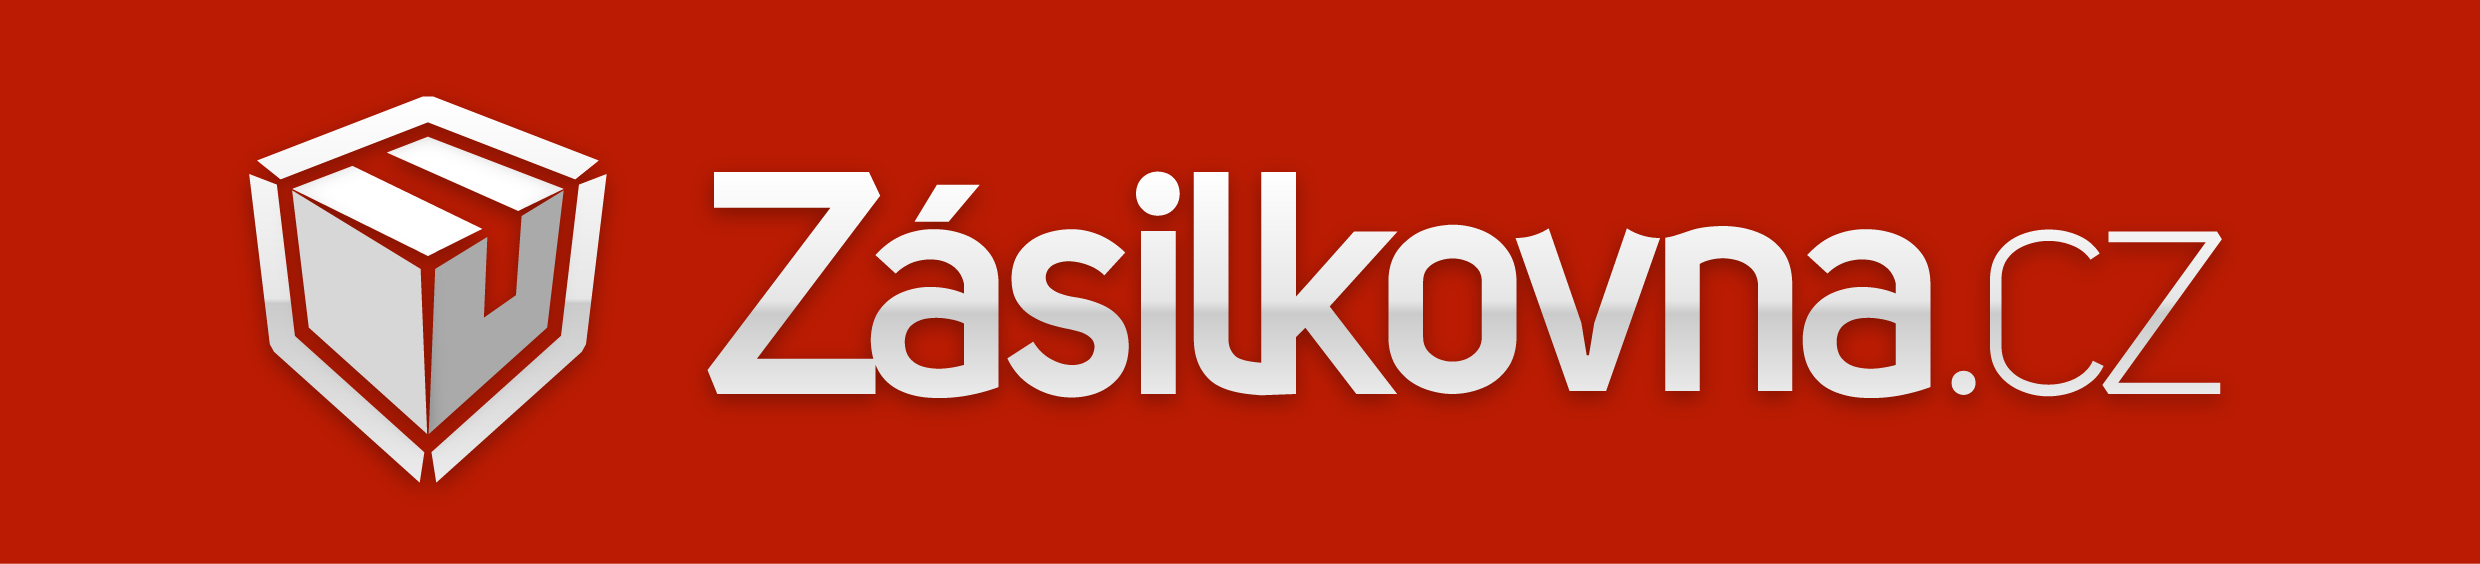 Zasilkovna_logo_obdelnik_zakladni_verze_WEB